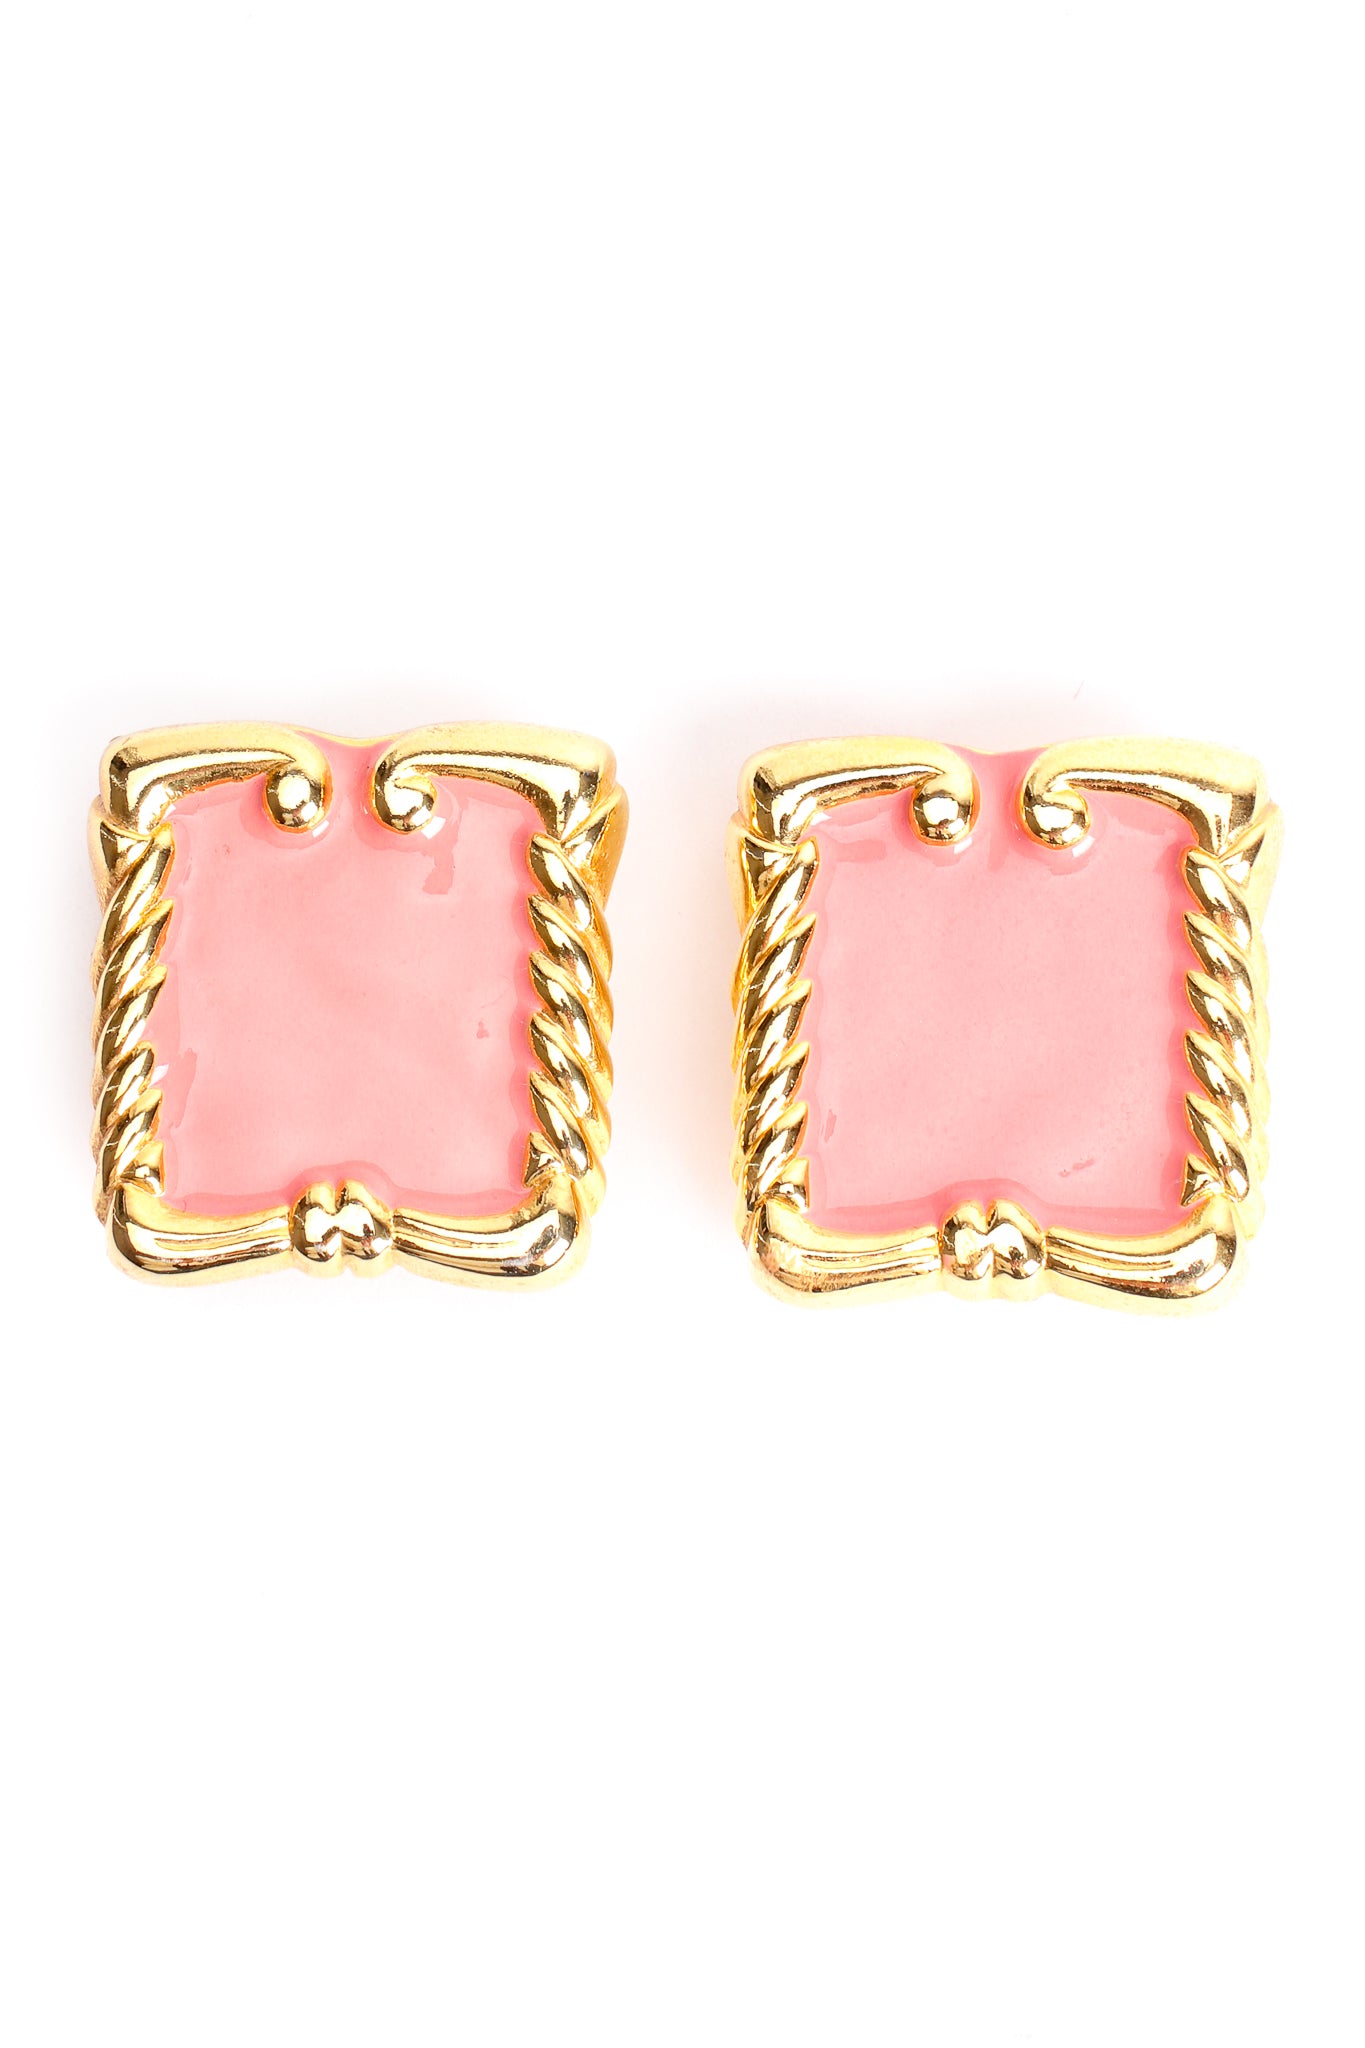 Vintage Pink Enamel Baroque Frame Earrings at Recess Los Angeles